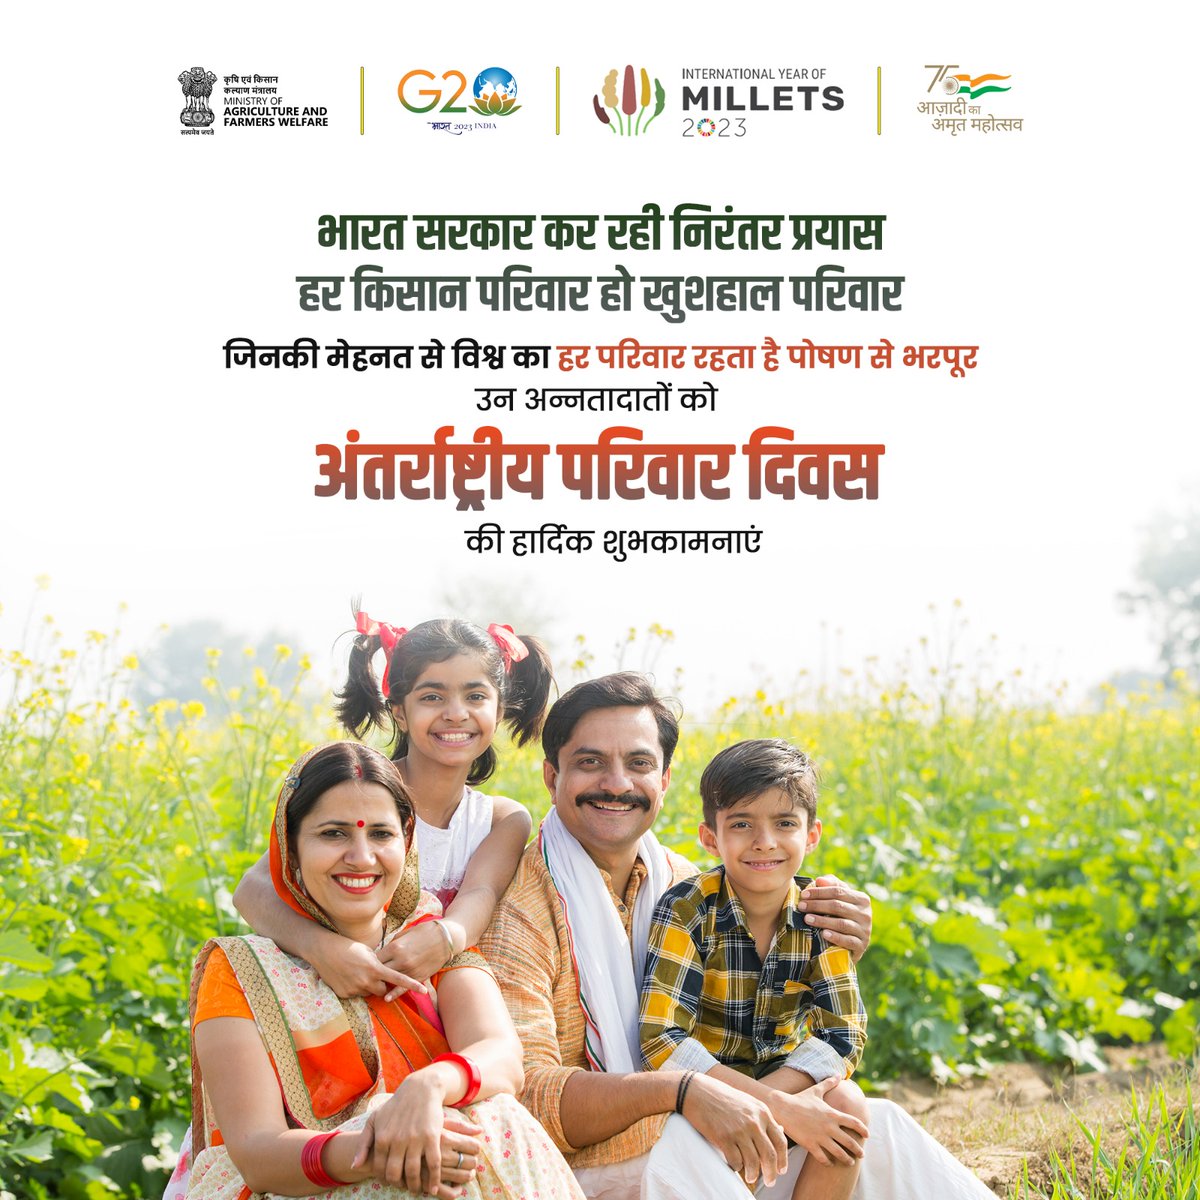 भारत सरकार कर रही निरंतर प्रयास
हर किसान परिवार हो खुशहाल परिवार

जो अन्नदाता उठाते हैं हम सबके पौष्टिक आहार की जिम्मेदारी, उन सभी किसान परिवारों को कृषि एवं किसान कल्याण विभाग, भारत सरकार की ओर से अंतर्राष्ट्रीय परिवार दिवस की हार्दिक शुभकामनाएं।
#InternationalFamilyDay #farmers